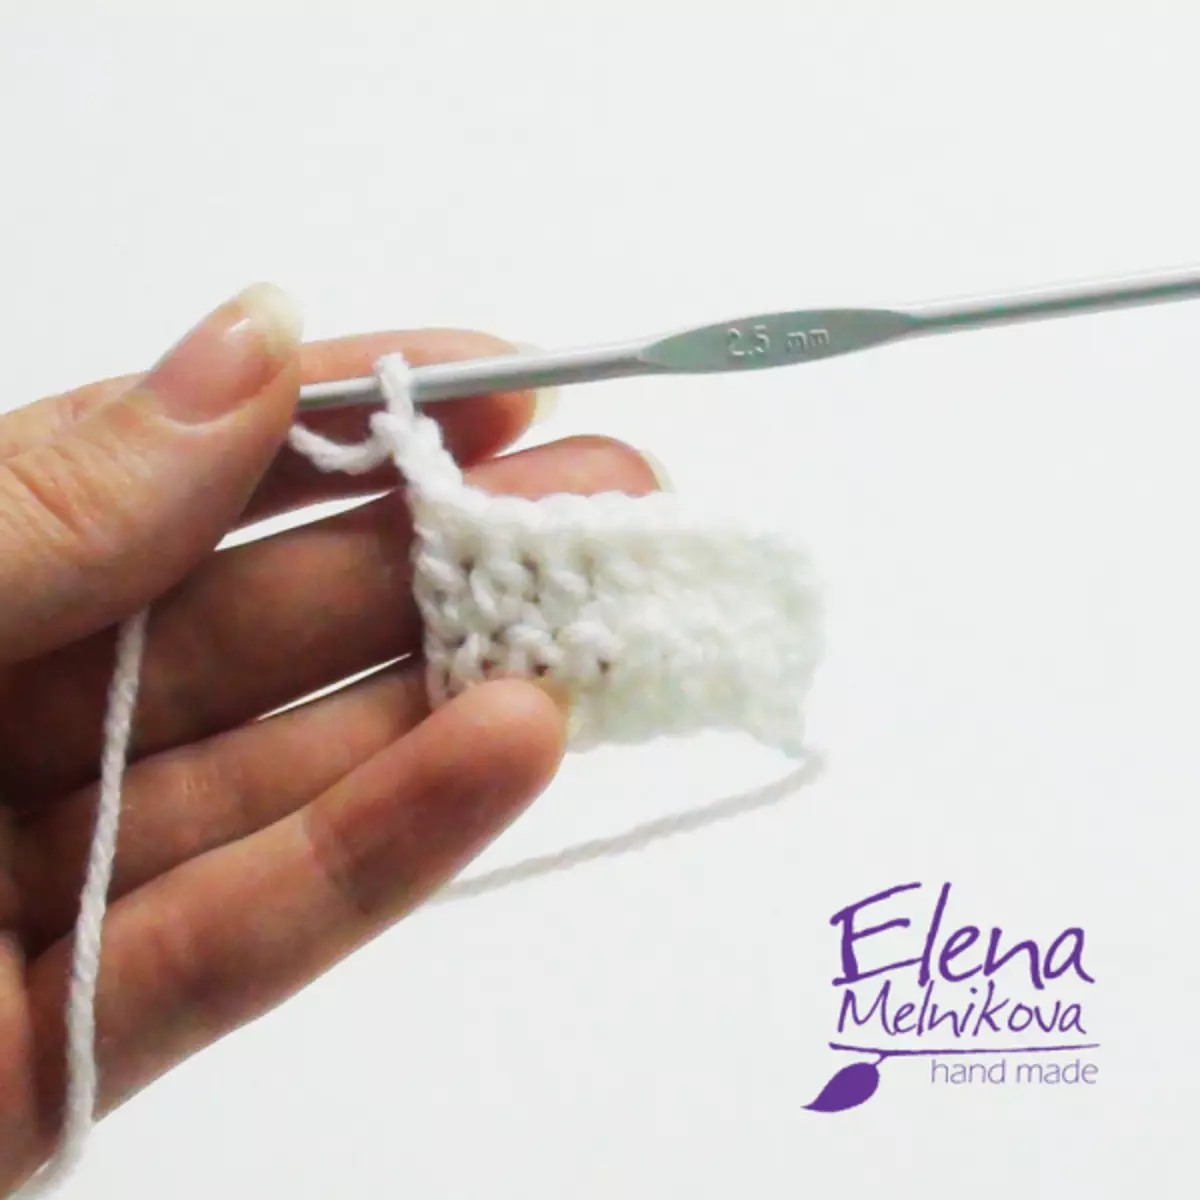 Katyske earen: Workshop op crochet mei regelingen